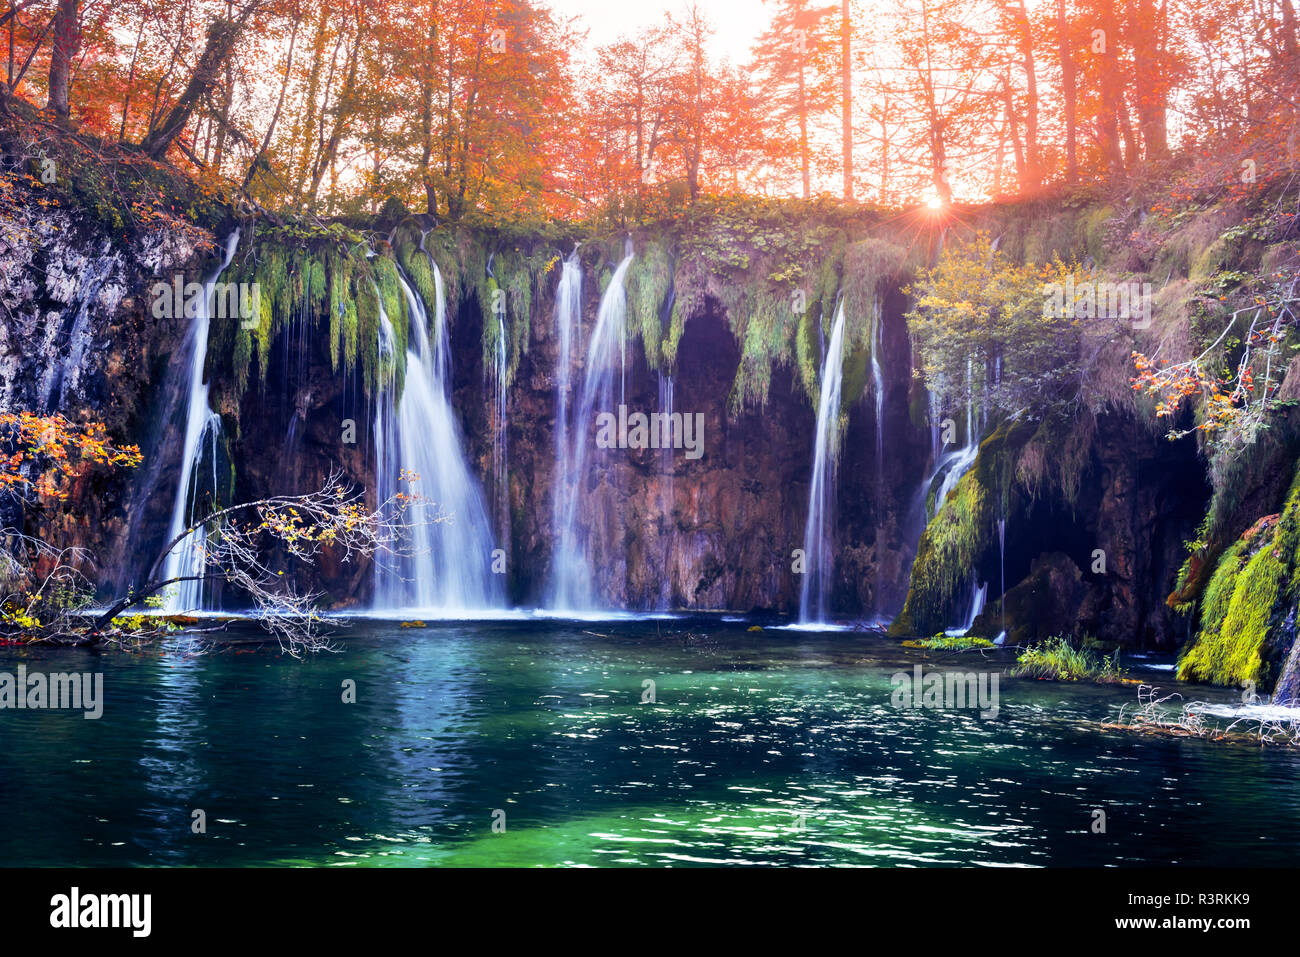 Impresionante cascada con agua azul puro en los lagos de Plitvice. Bosque de otoño sobre fondo naranja. El Parque Nacional de los lagos de Plitvice (Croacia). Fotografía paisajística Foto de stock